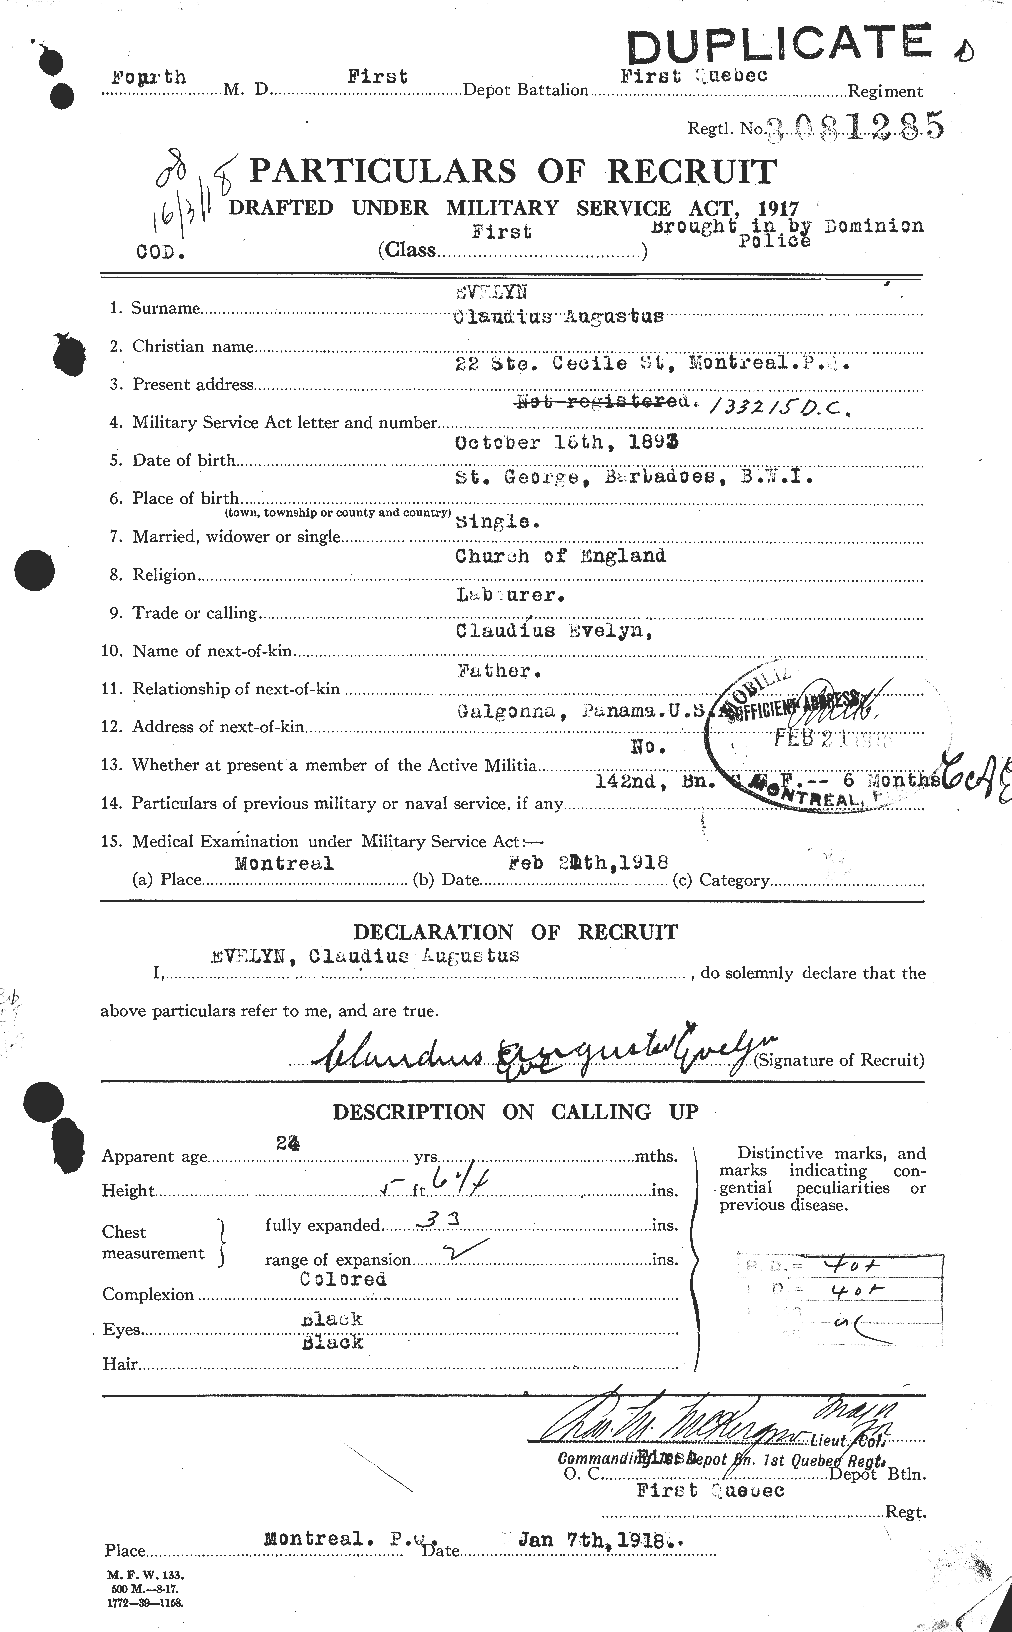 Dossiers du Personnel de la Première Guerre mondiale - CEC 315718a